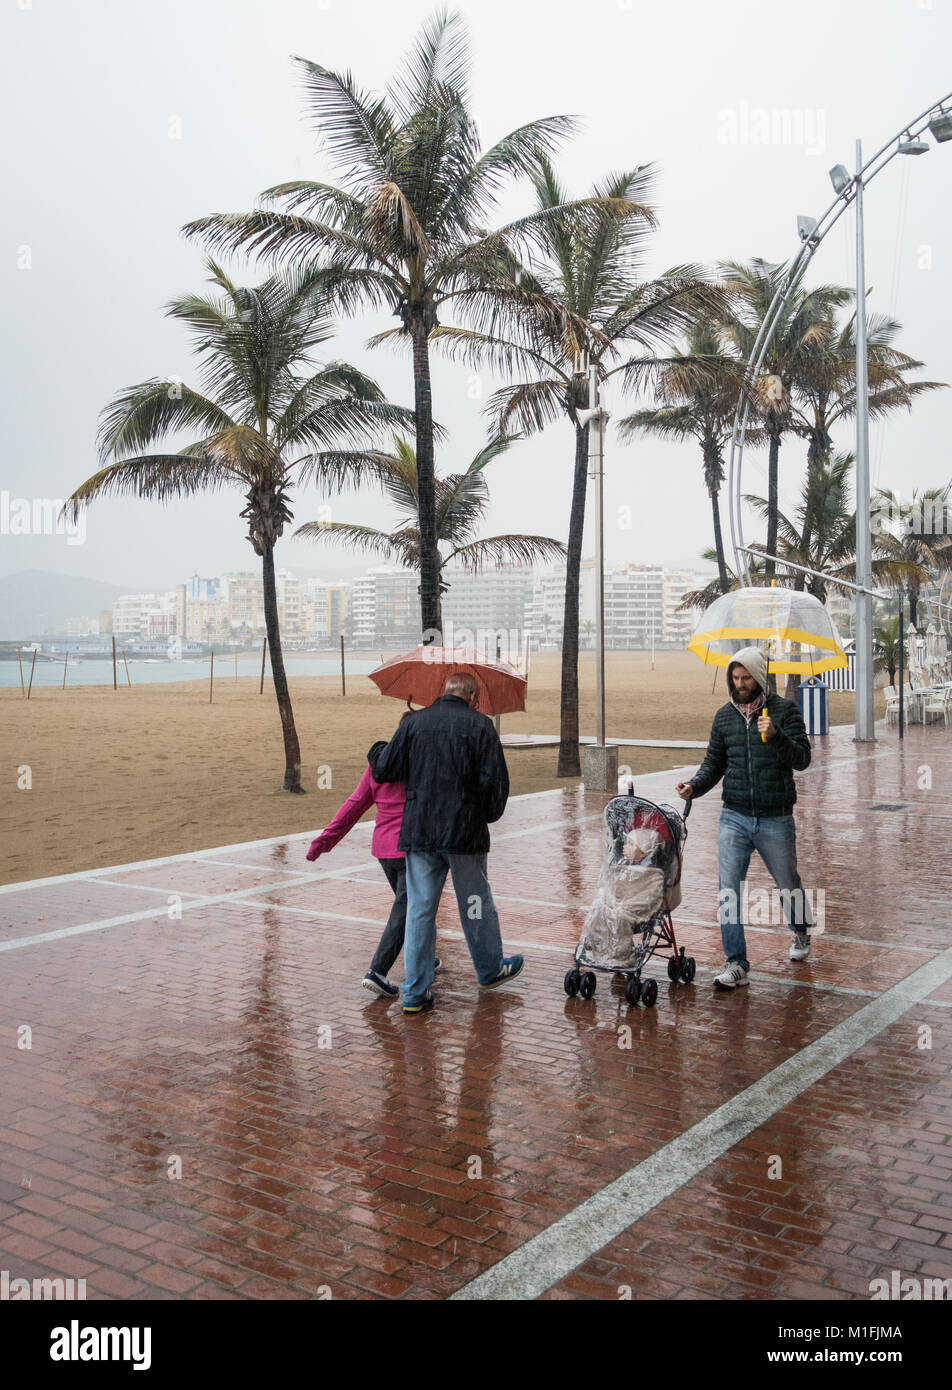 Las Palmas, Gran Canaria, Kanarische Inseln, Spanien. 30. Januar, 2018.  Wetter: sintflutartiger Regen auf einem kalten Dienstag Morgen auf dem  Stadtstrand von Las Palmas, der Hauptstadt Gran Canarias. Ein ungewöhnlich  kalten Bann